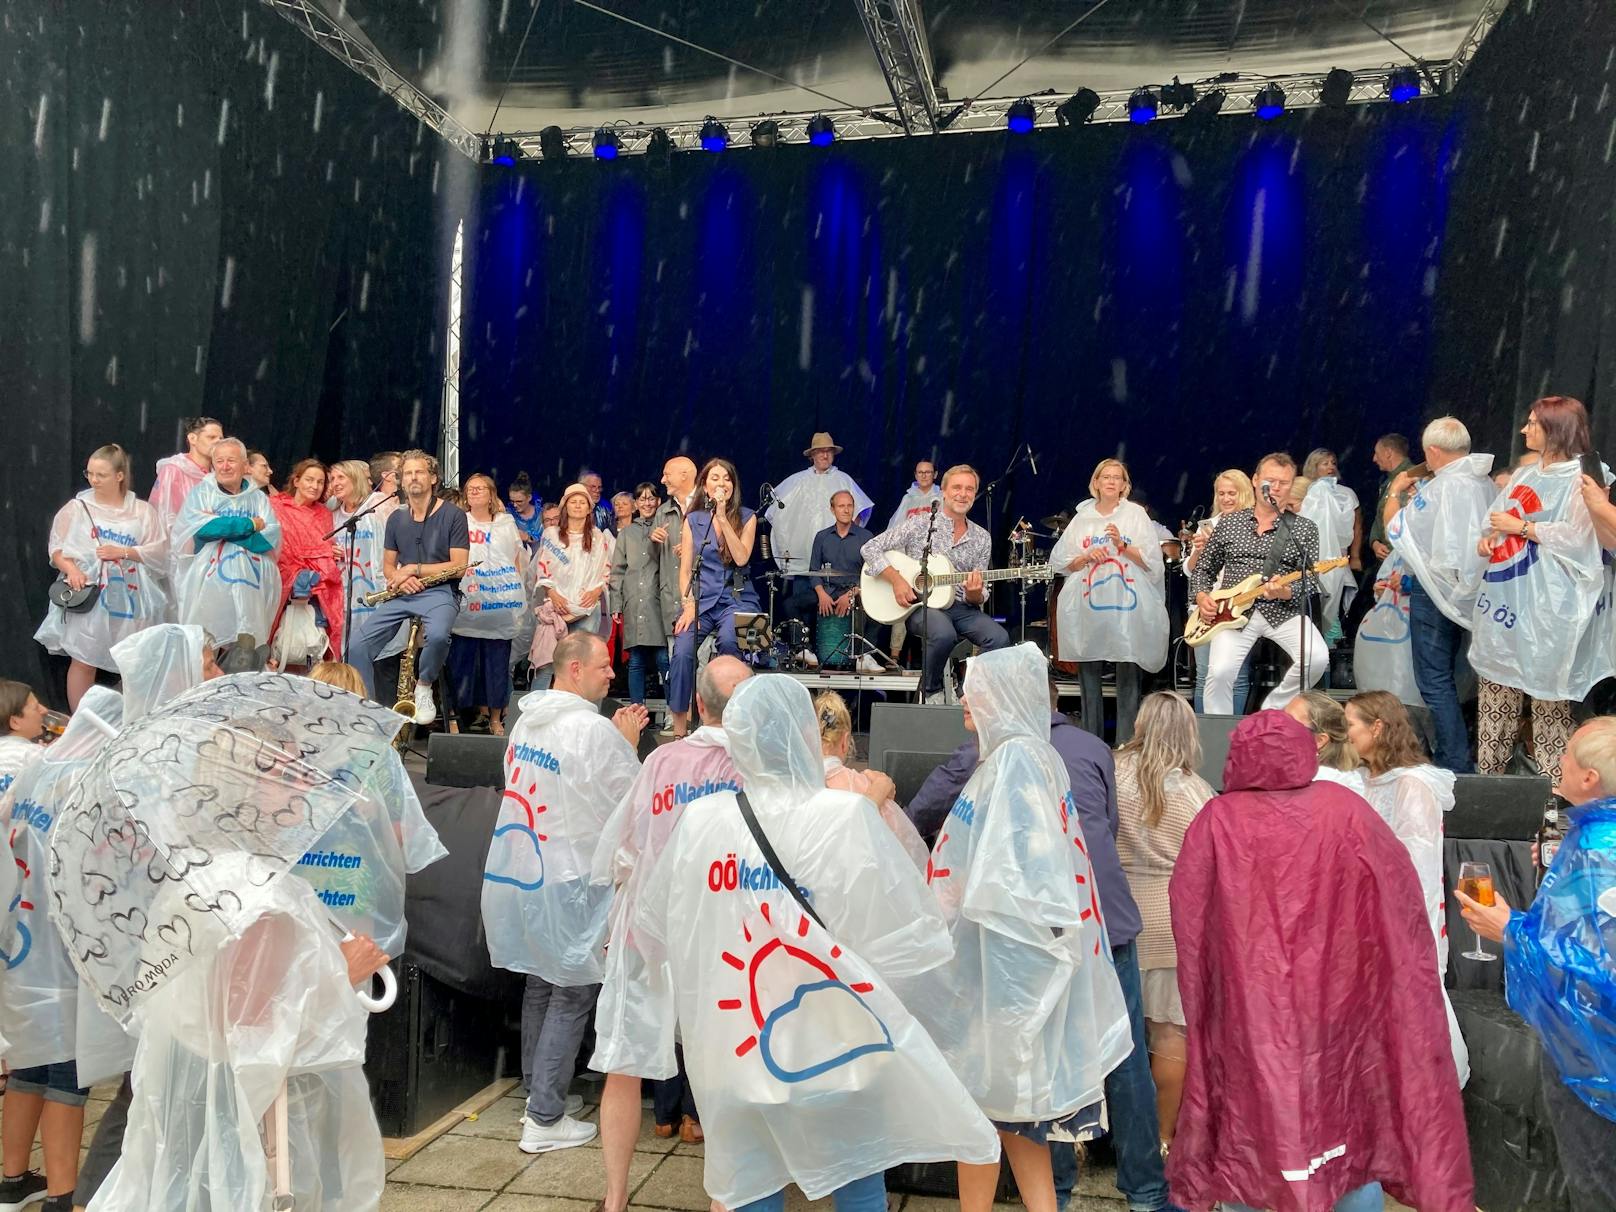 Monika-Ballwein-Fans flüchten vor Unwetter auf Bühne